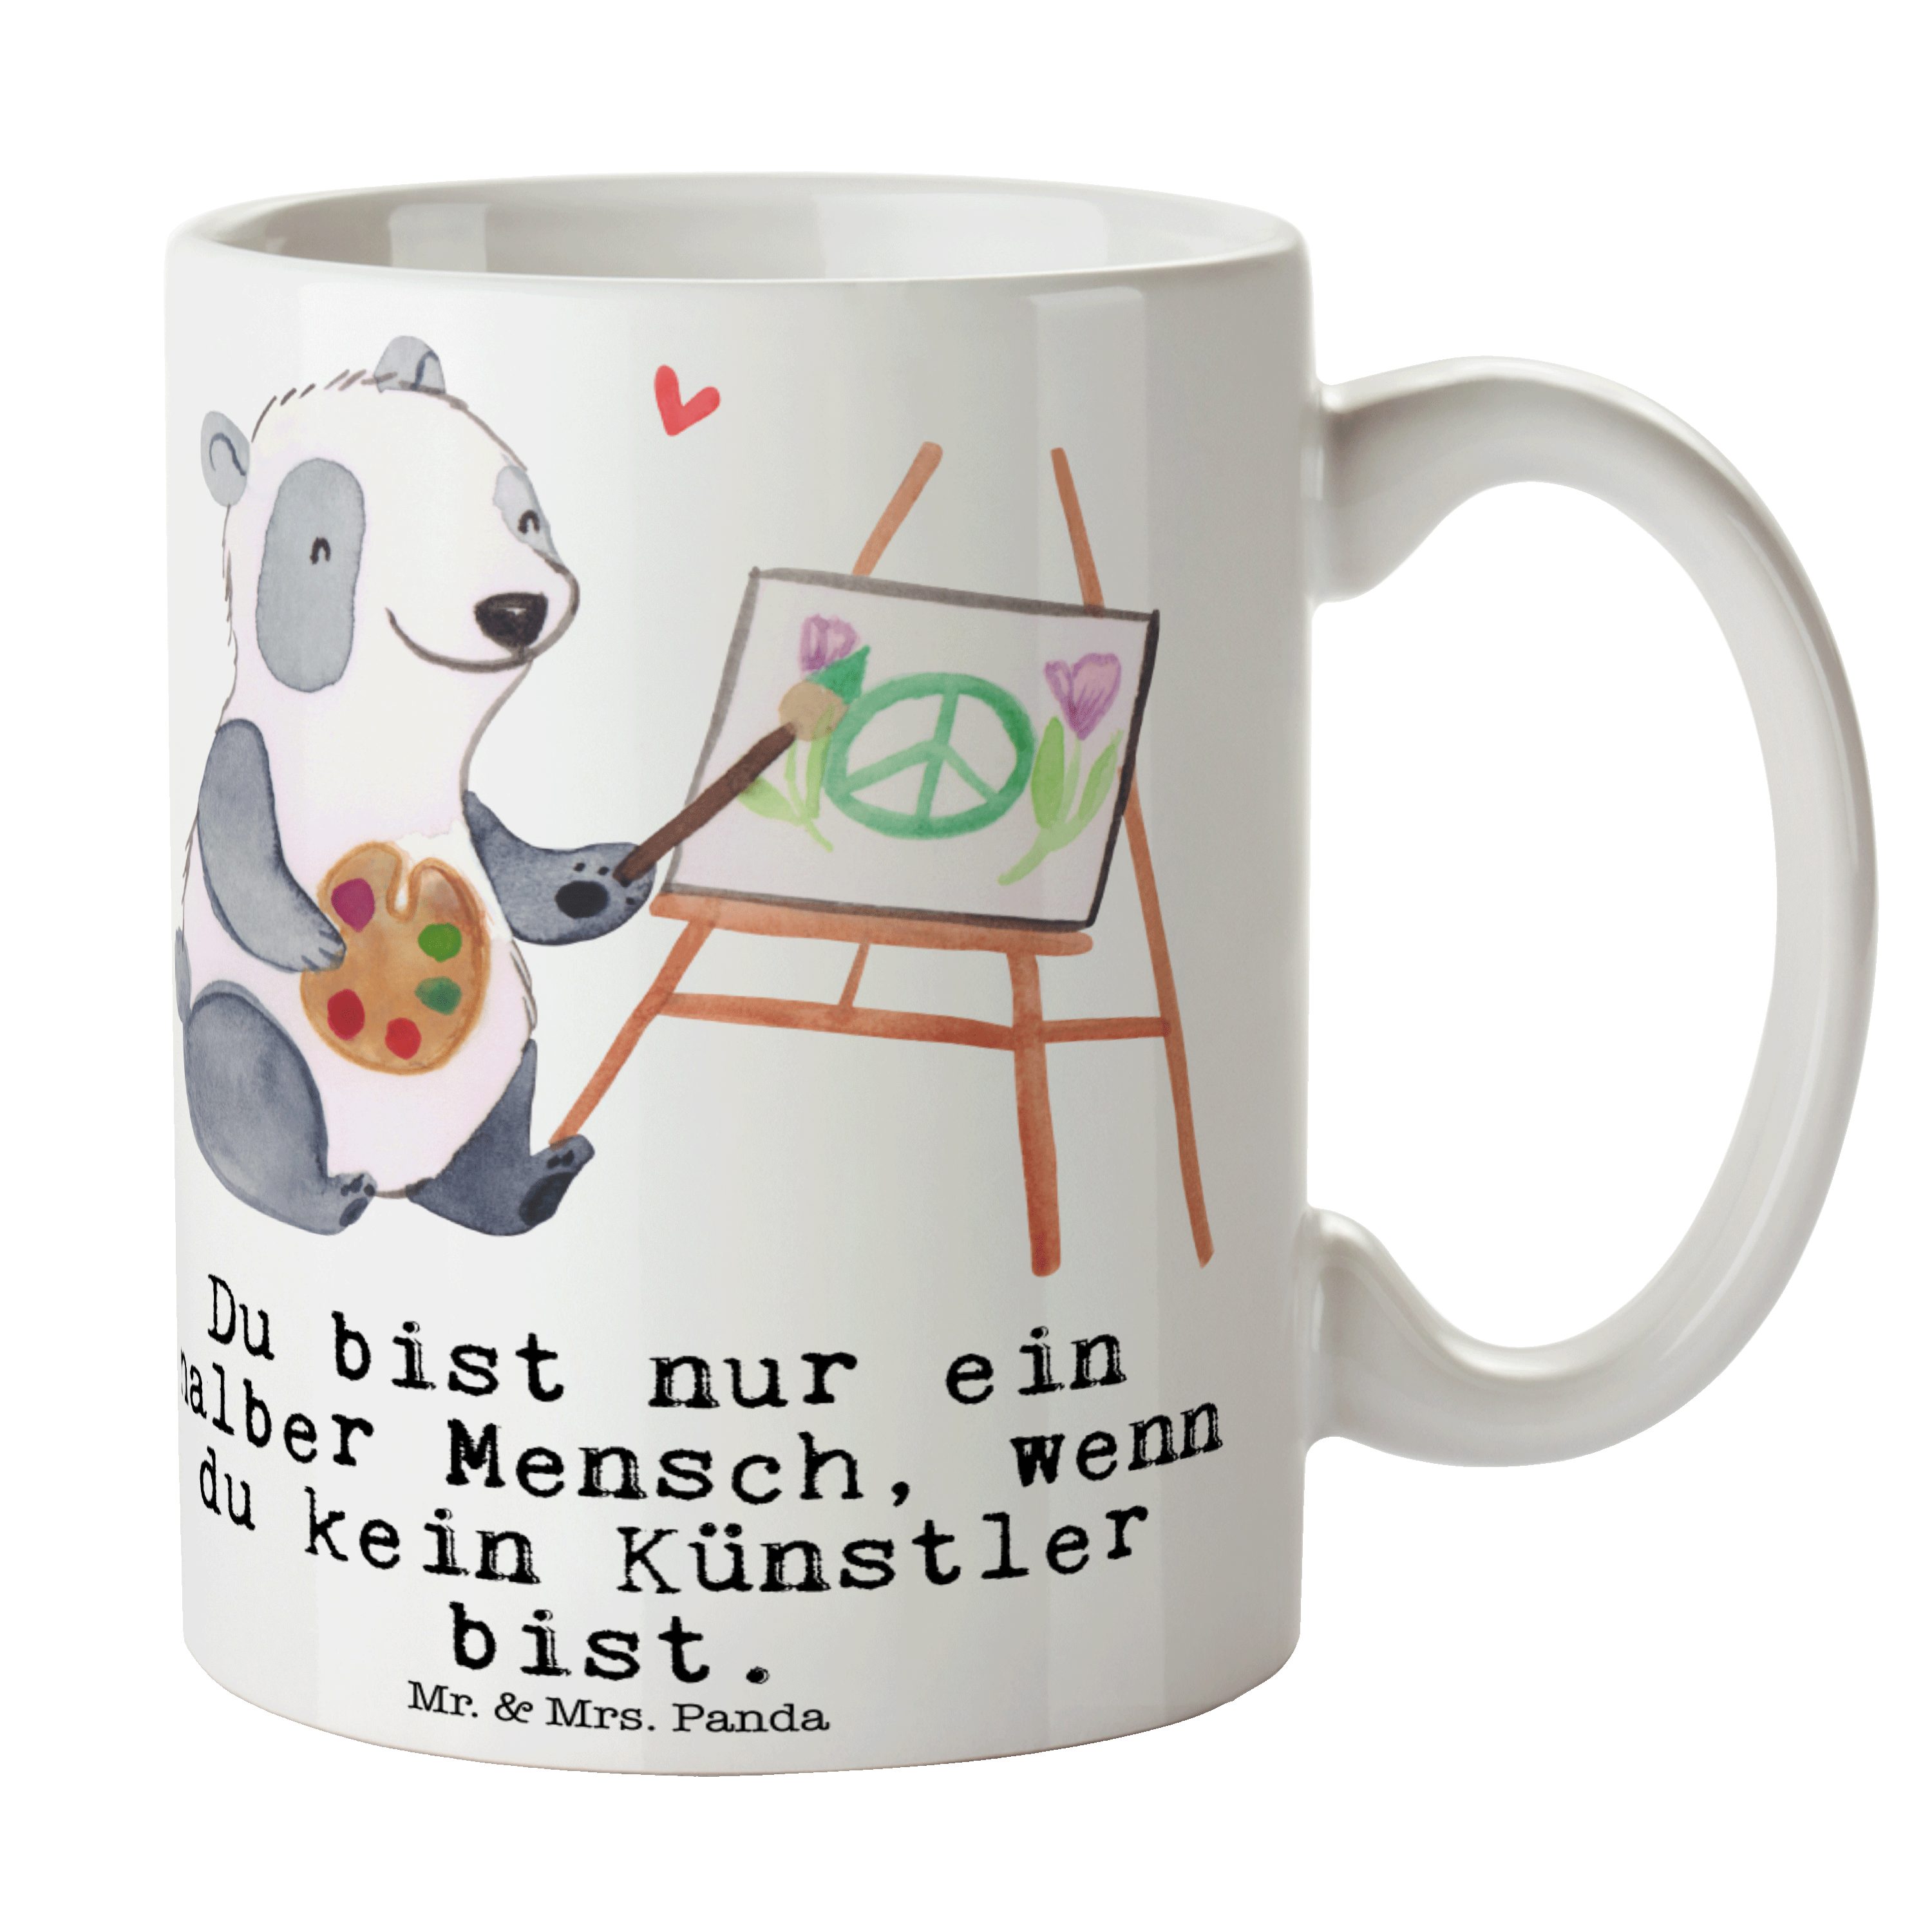 Mr. & Mrs. Panda Tasse Künstler mit Herz - Weiß - Geschenk, Kunstschule, Geschenk Tasse, Sch, Keramik